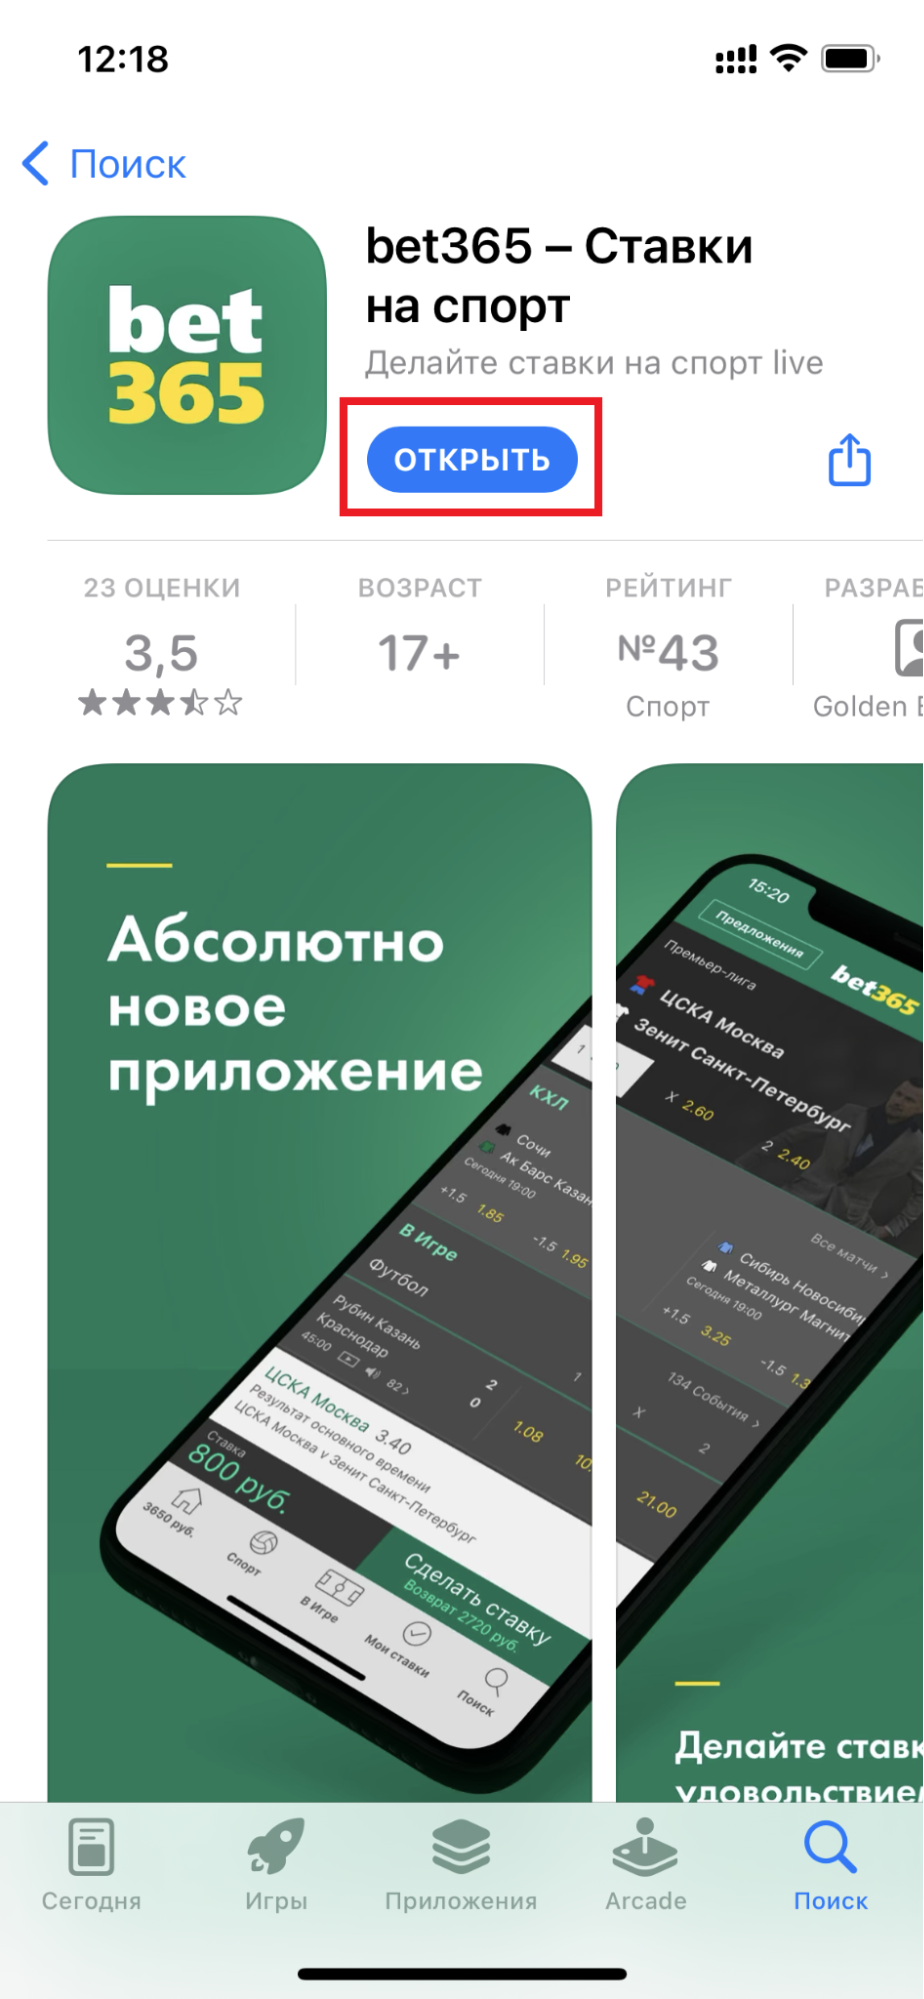 Кнопка открытия приложения БК bet365.ru для iOS на странице приложения в AppStore